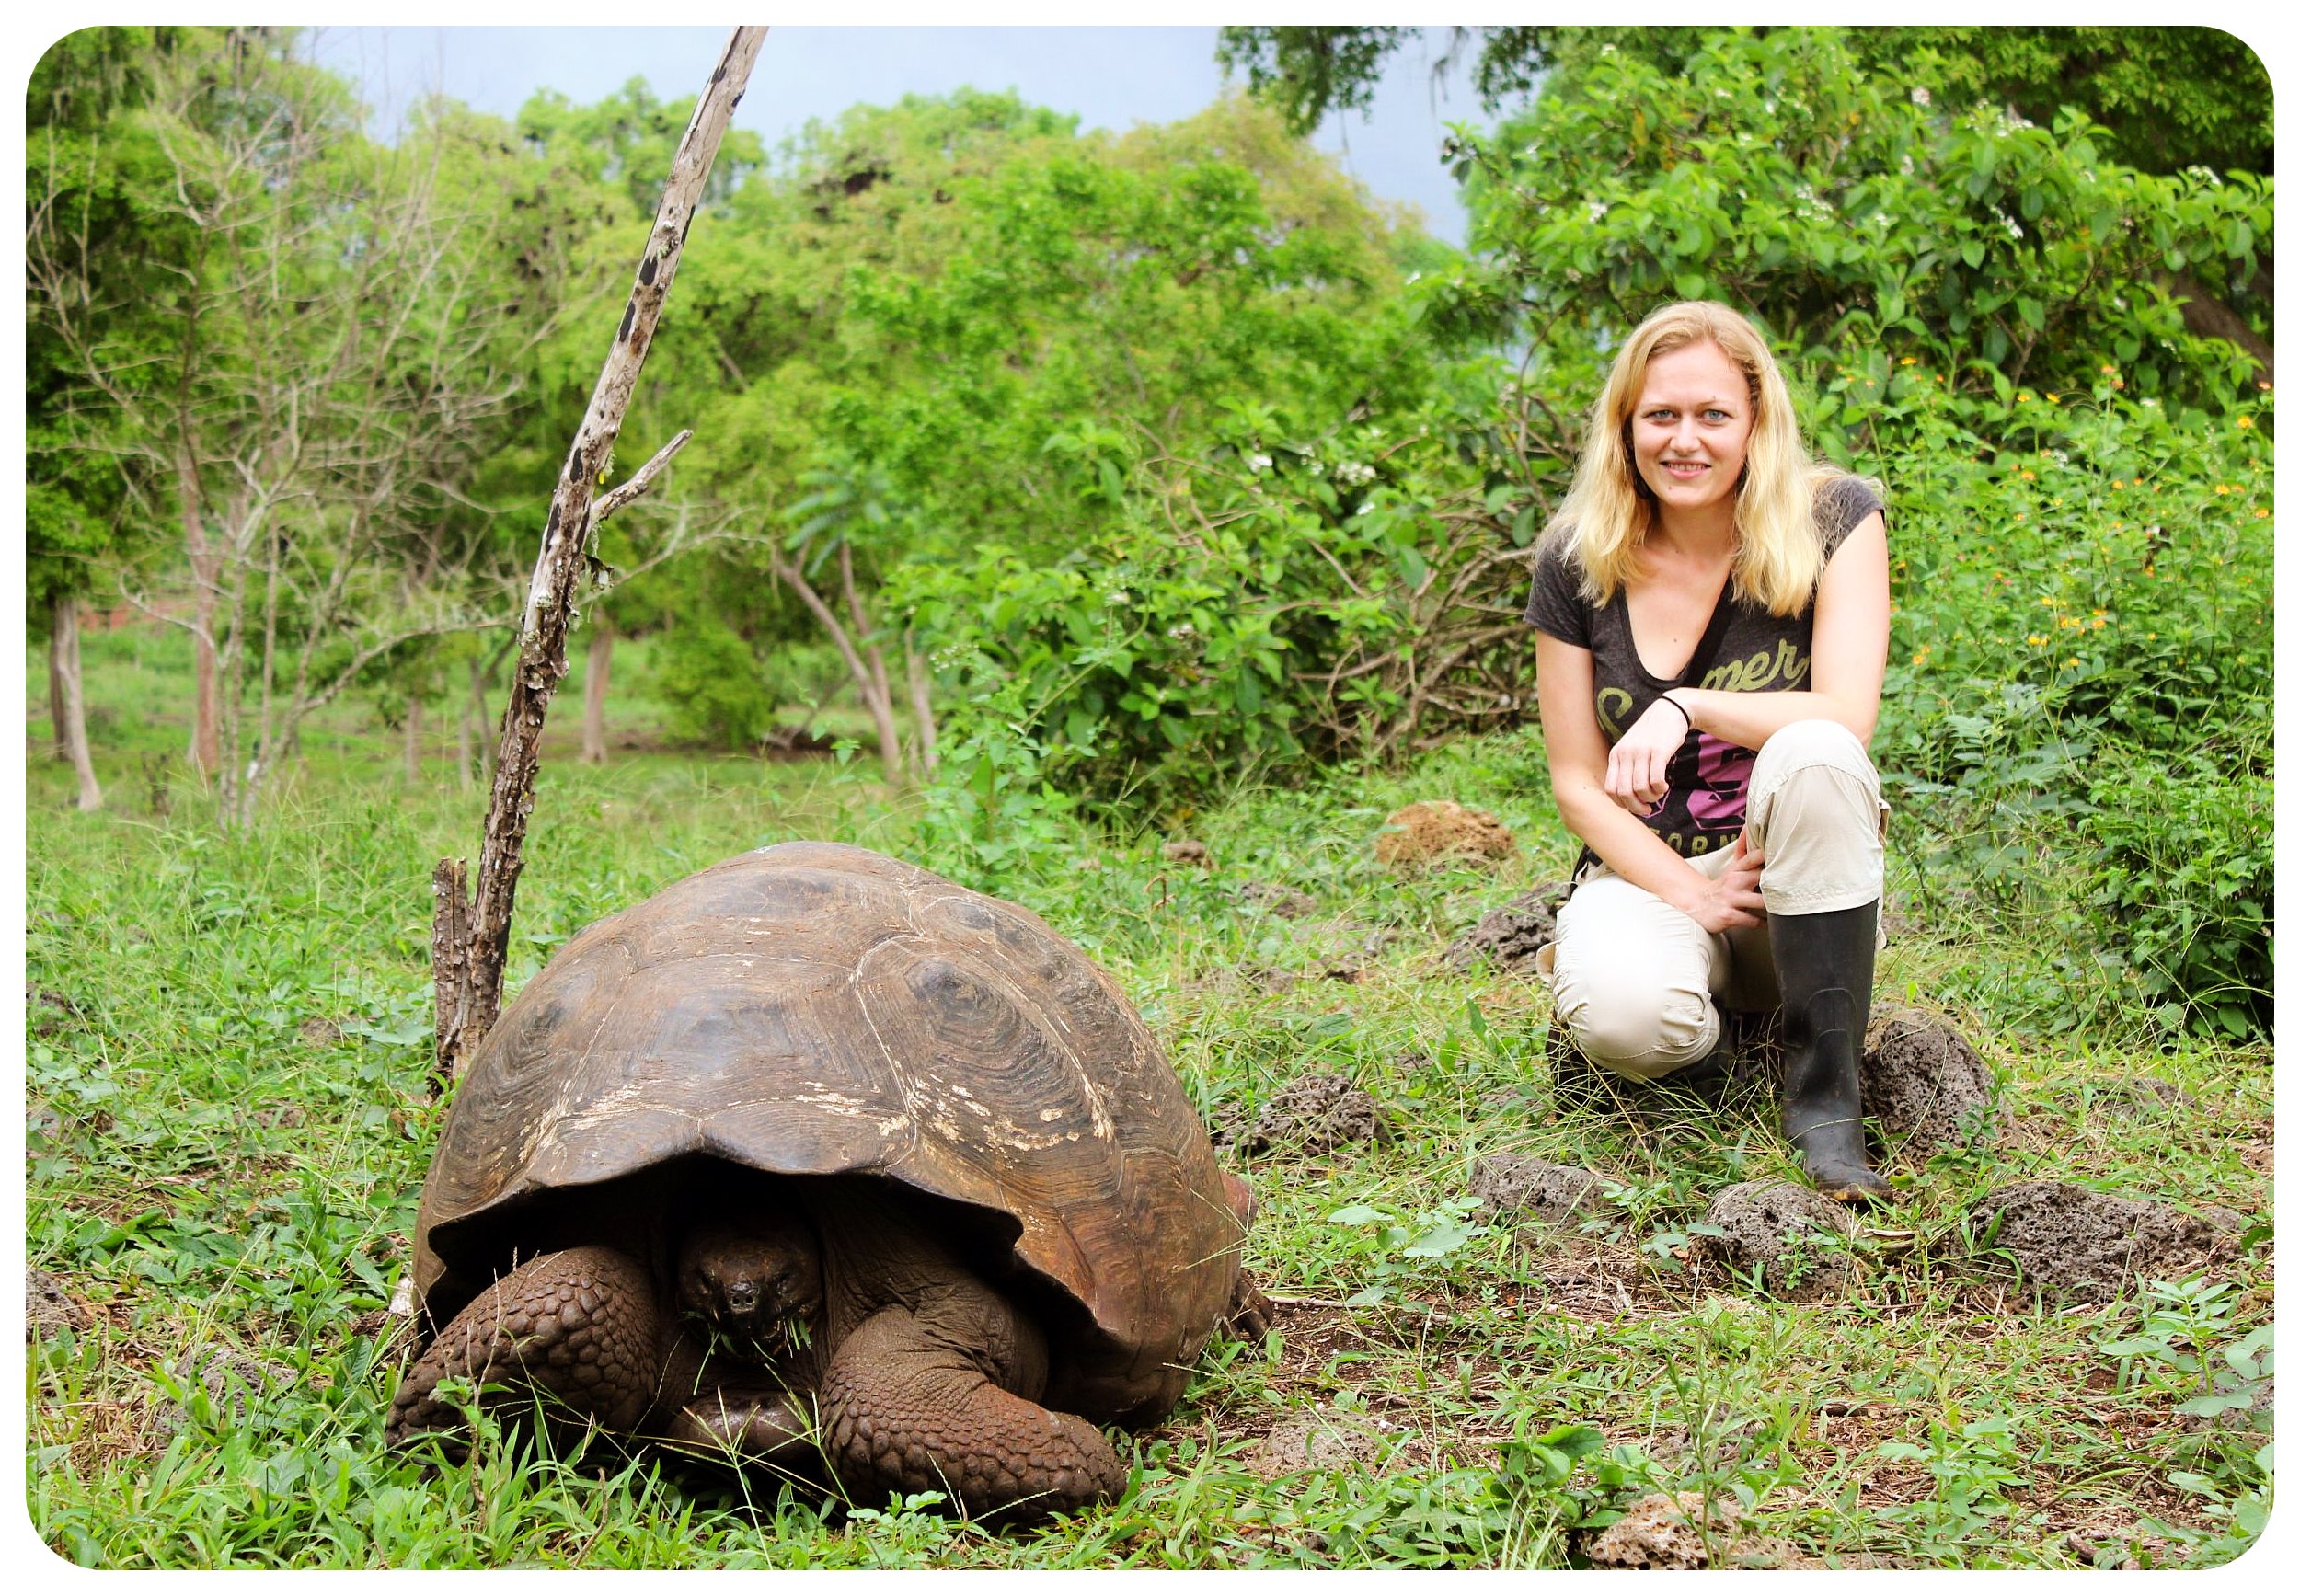 dani galapagos islands giant tortoise